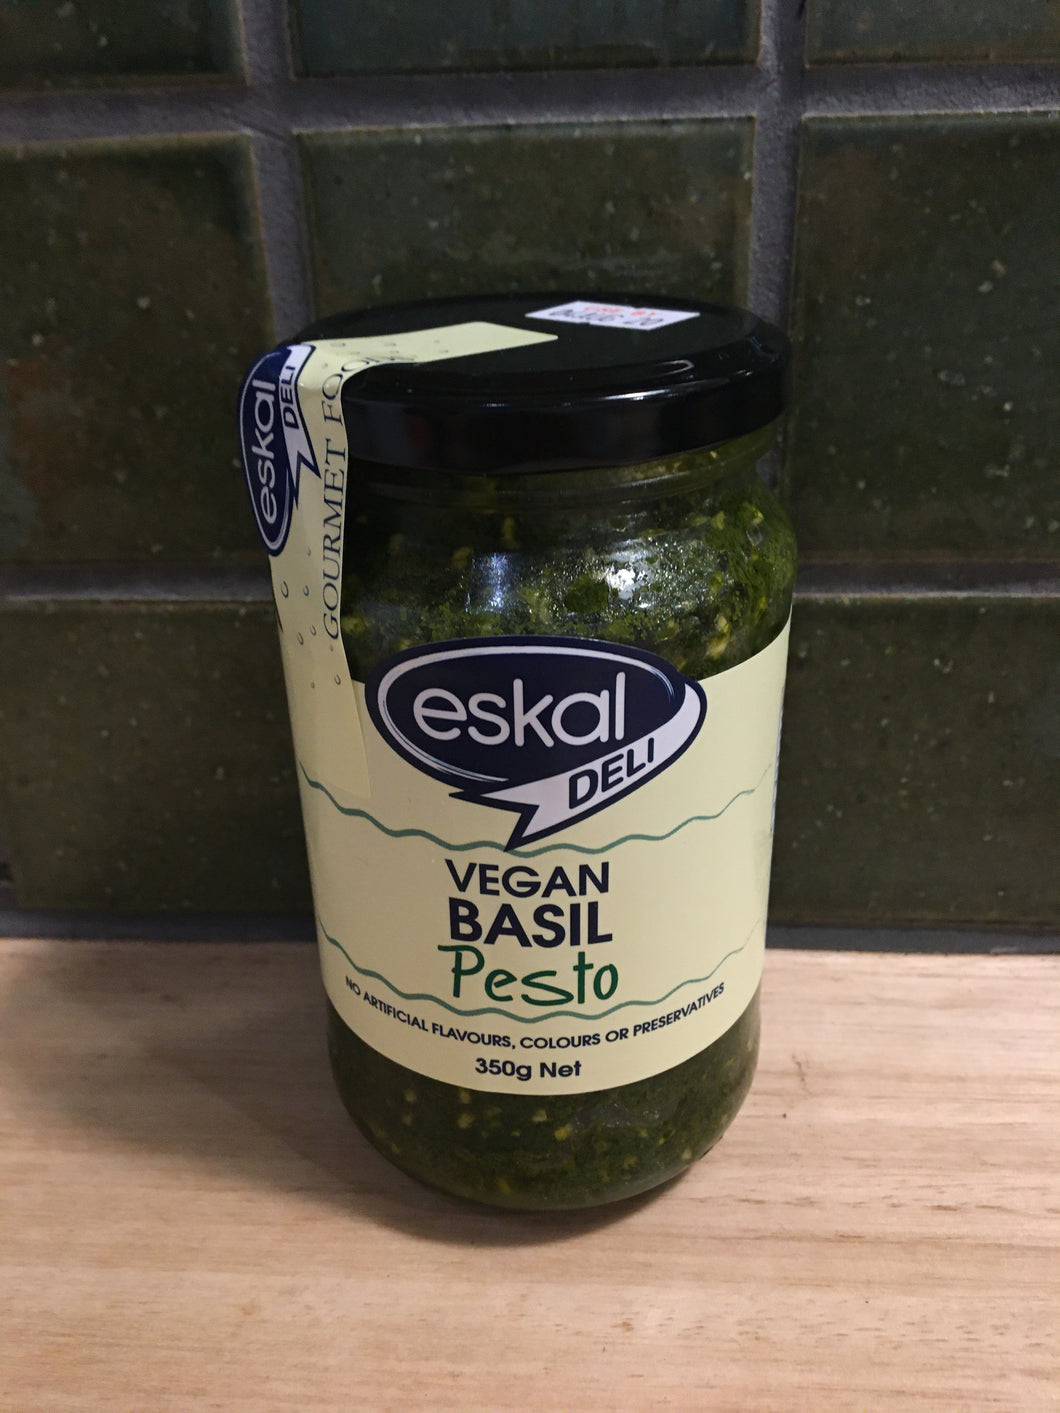 Eskal Deli Vegan Basil Pesto 350g